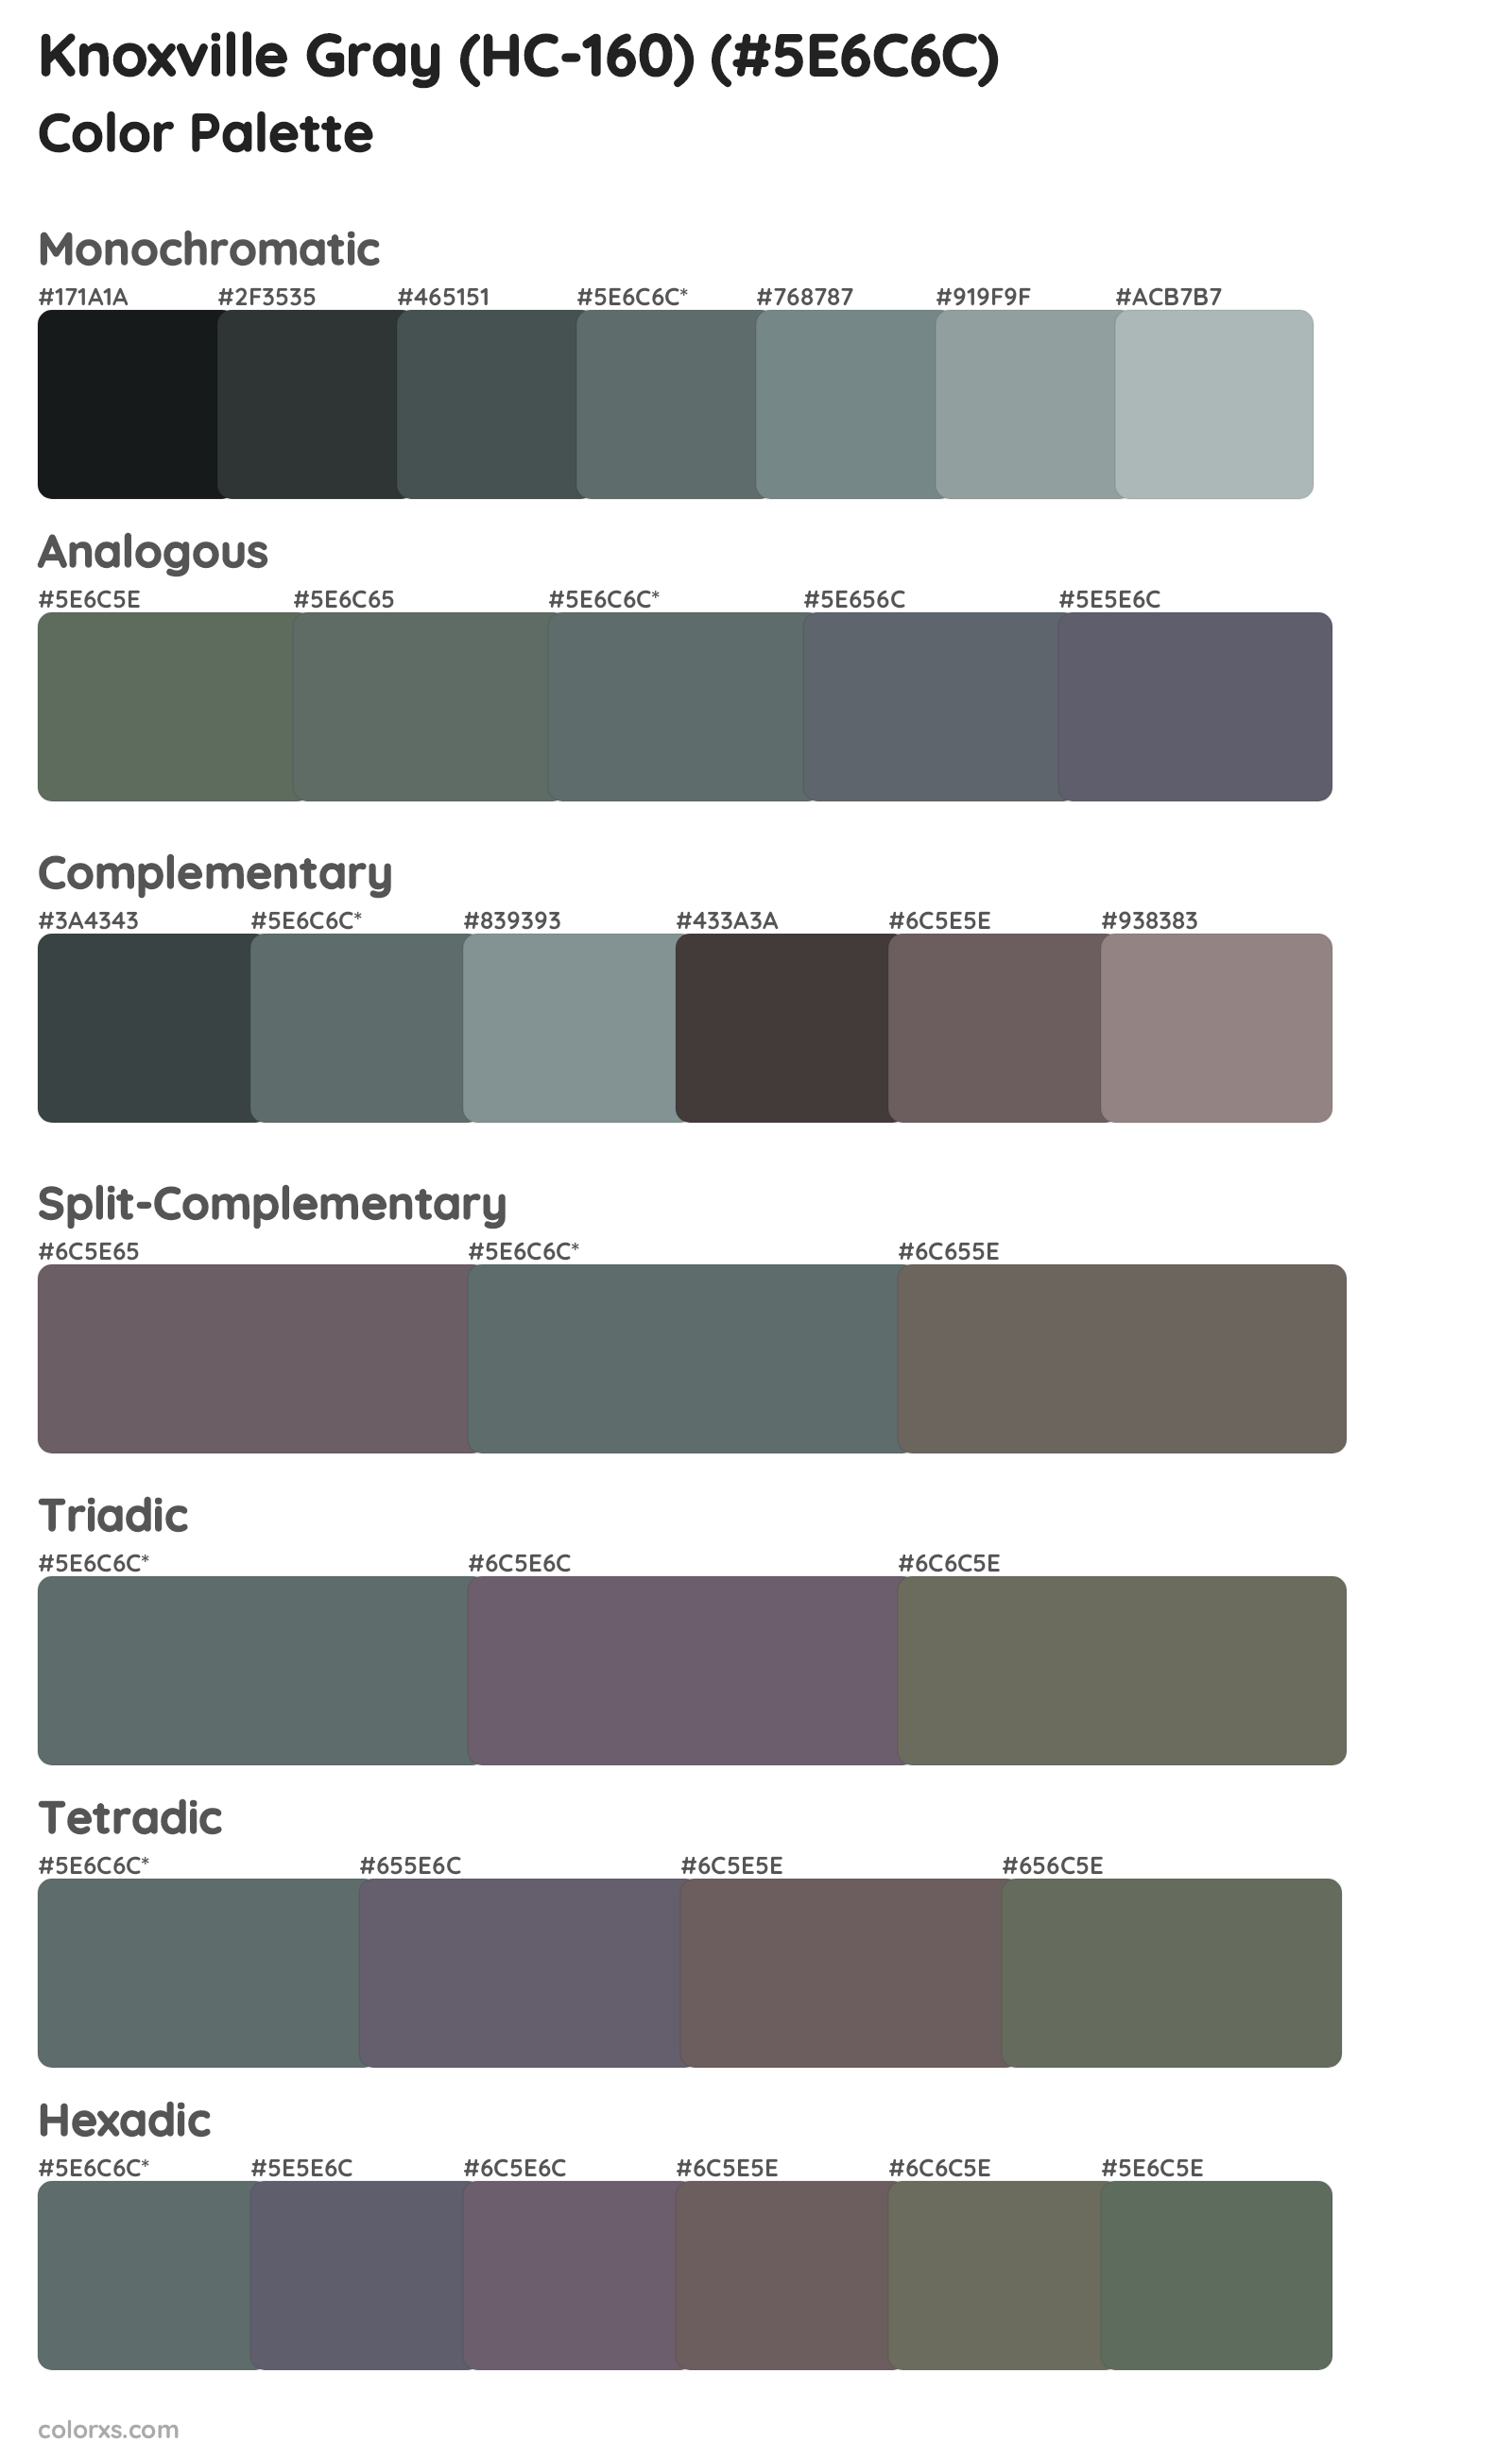 Knoxville Gray (HC-160) Color Scheme Palettes